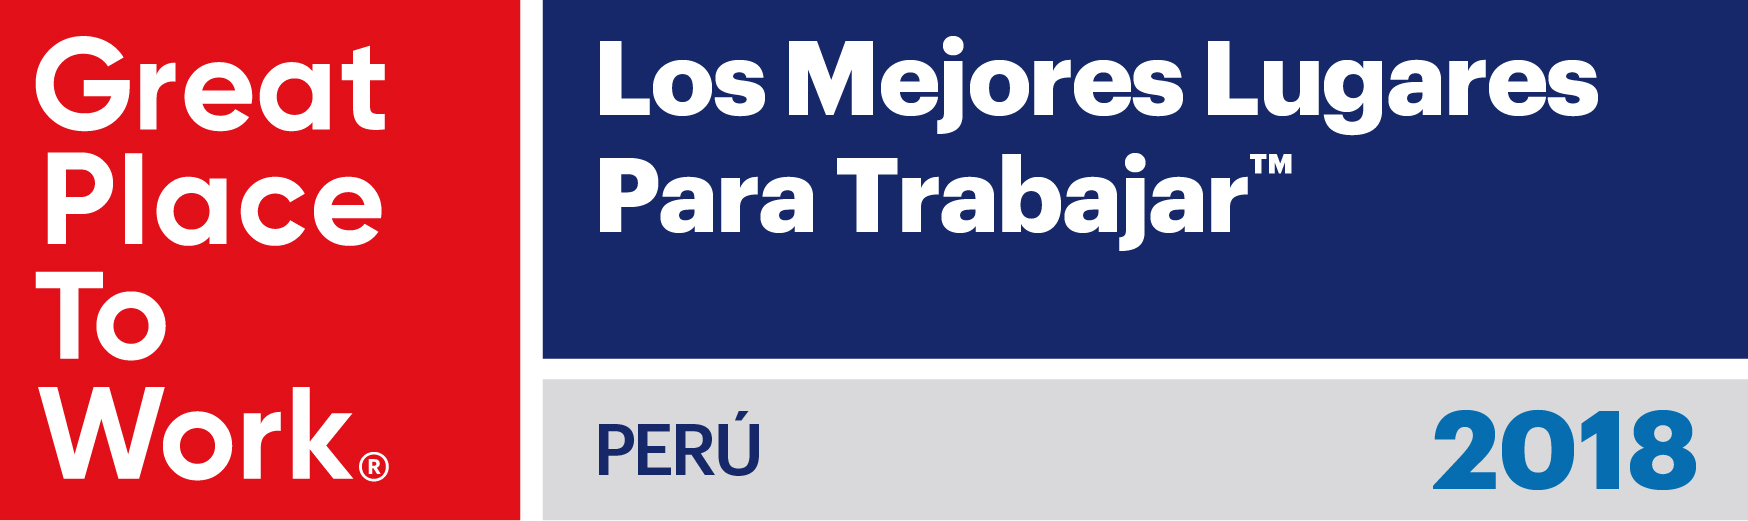 Los Mejores Lugares Para Trabajar™ 2018 Perú